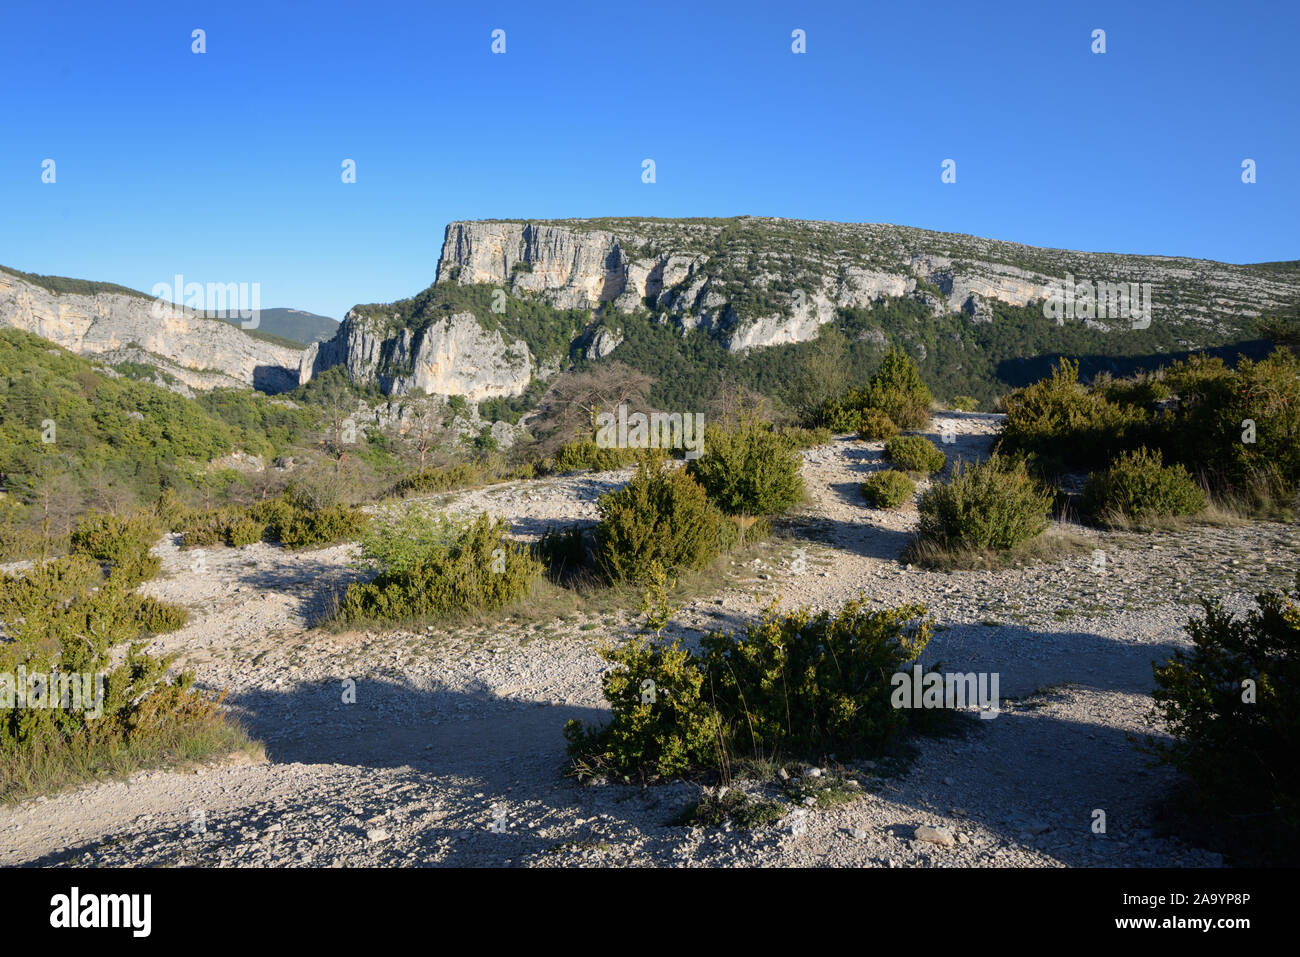 Klippen & Landschaft in der Verdon Schlucht in einem Gebiet, bekannt als die Point Sublime Rougon Provence Frankreich Stockfoto